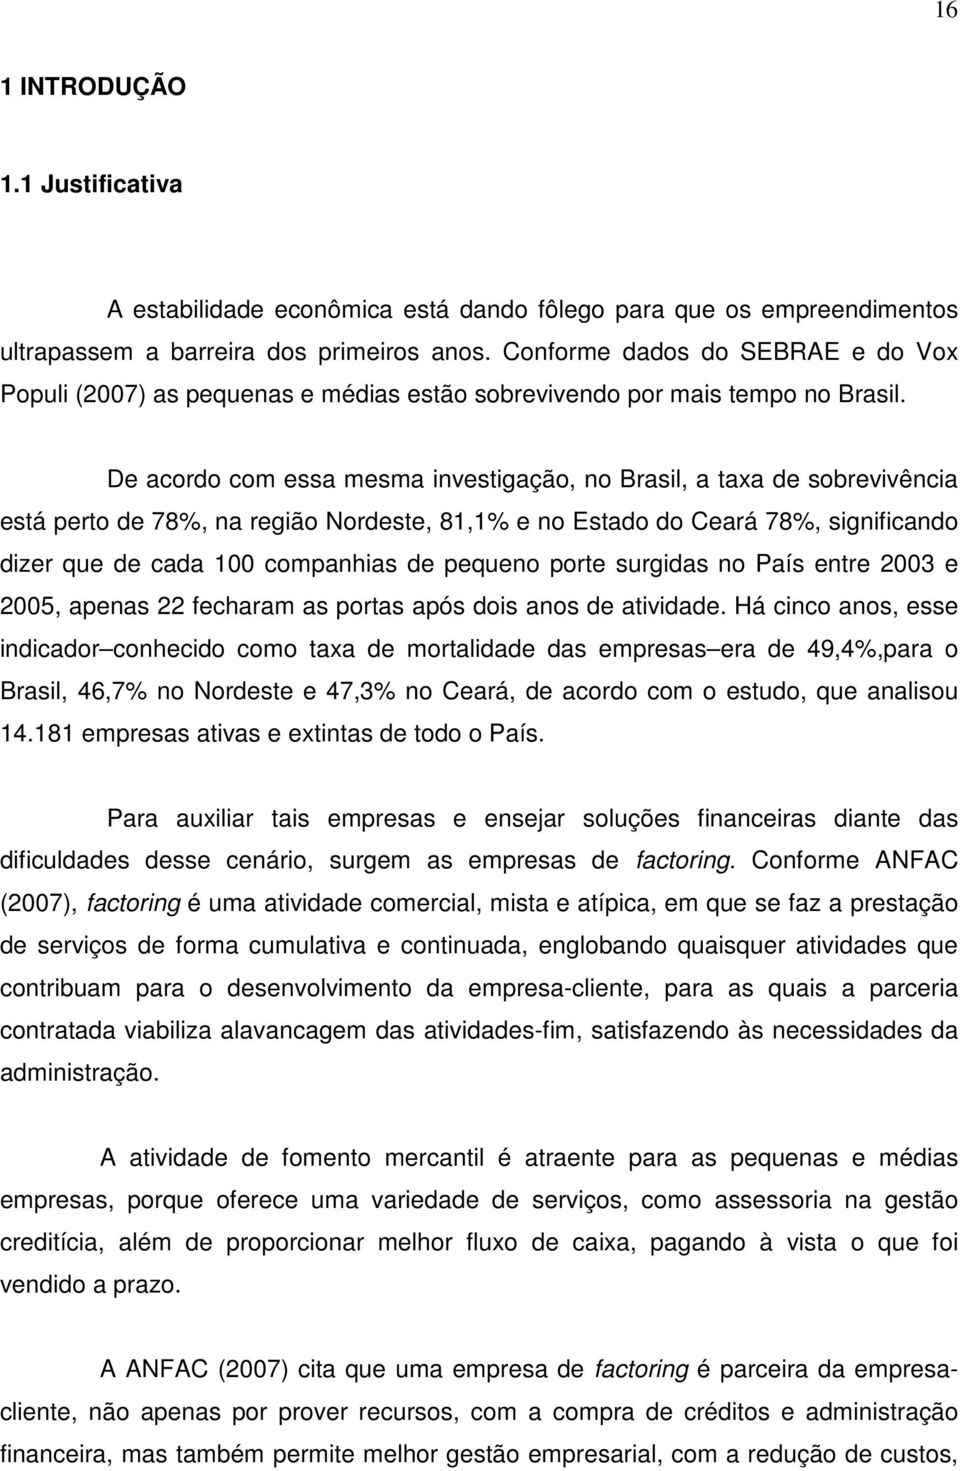 De acordo com essa mesma investigação, no Brasil, a taxa de sobrevivência está perto de 78%, na região Nordeste, 81,1% e no Estado do Ceará 78%, significando dizer que de cada 100 companhias de